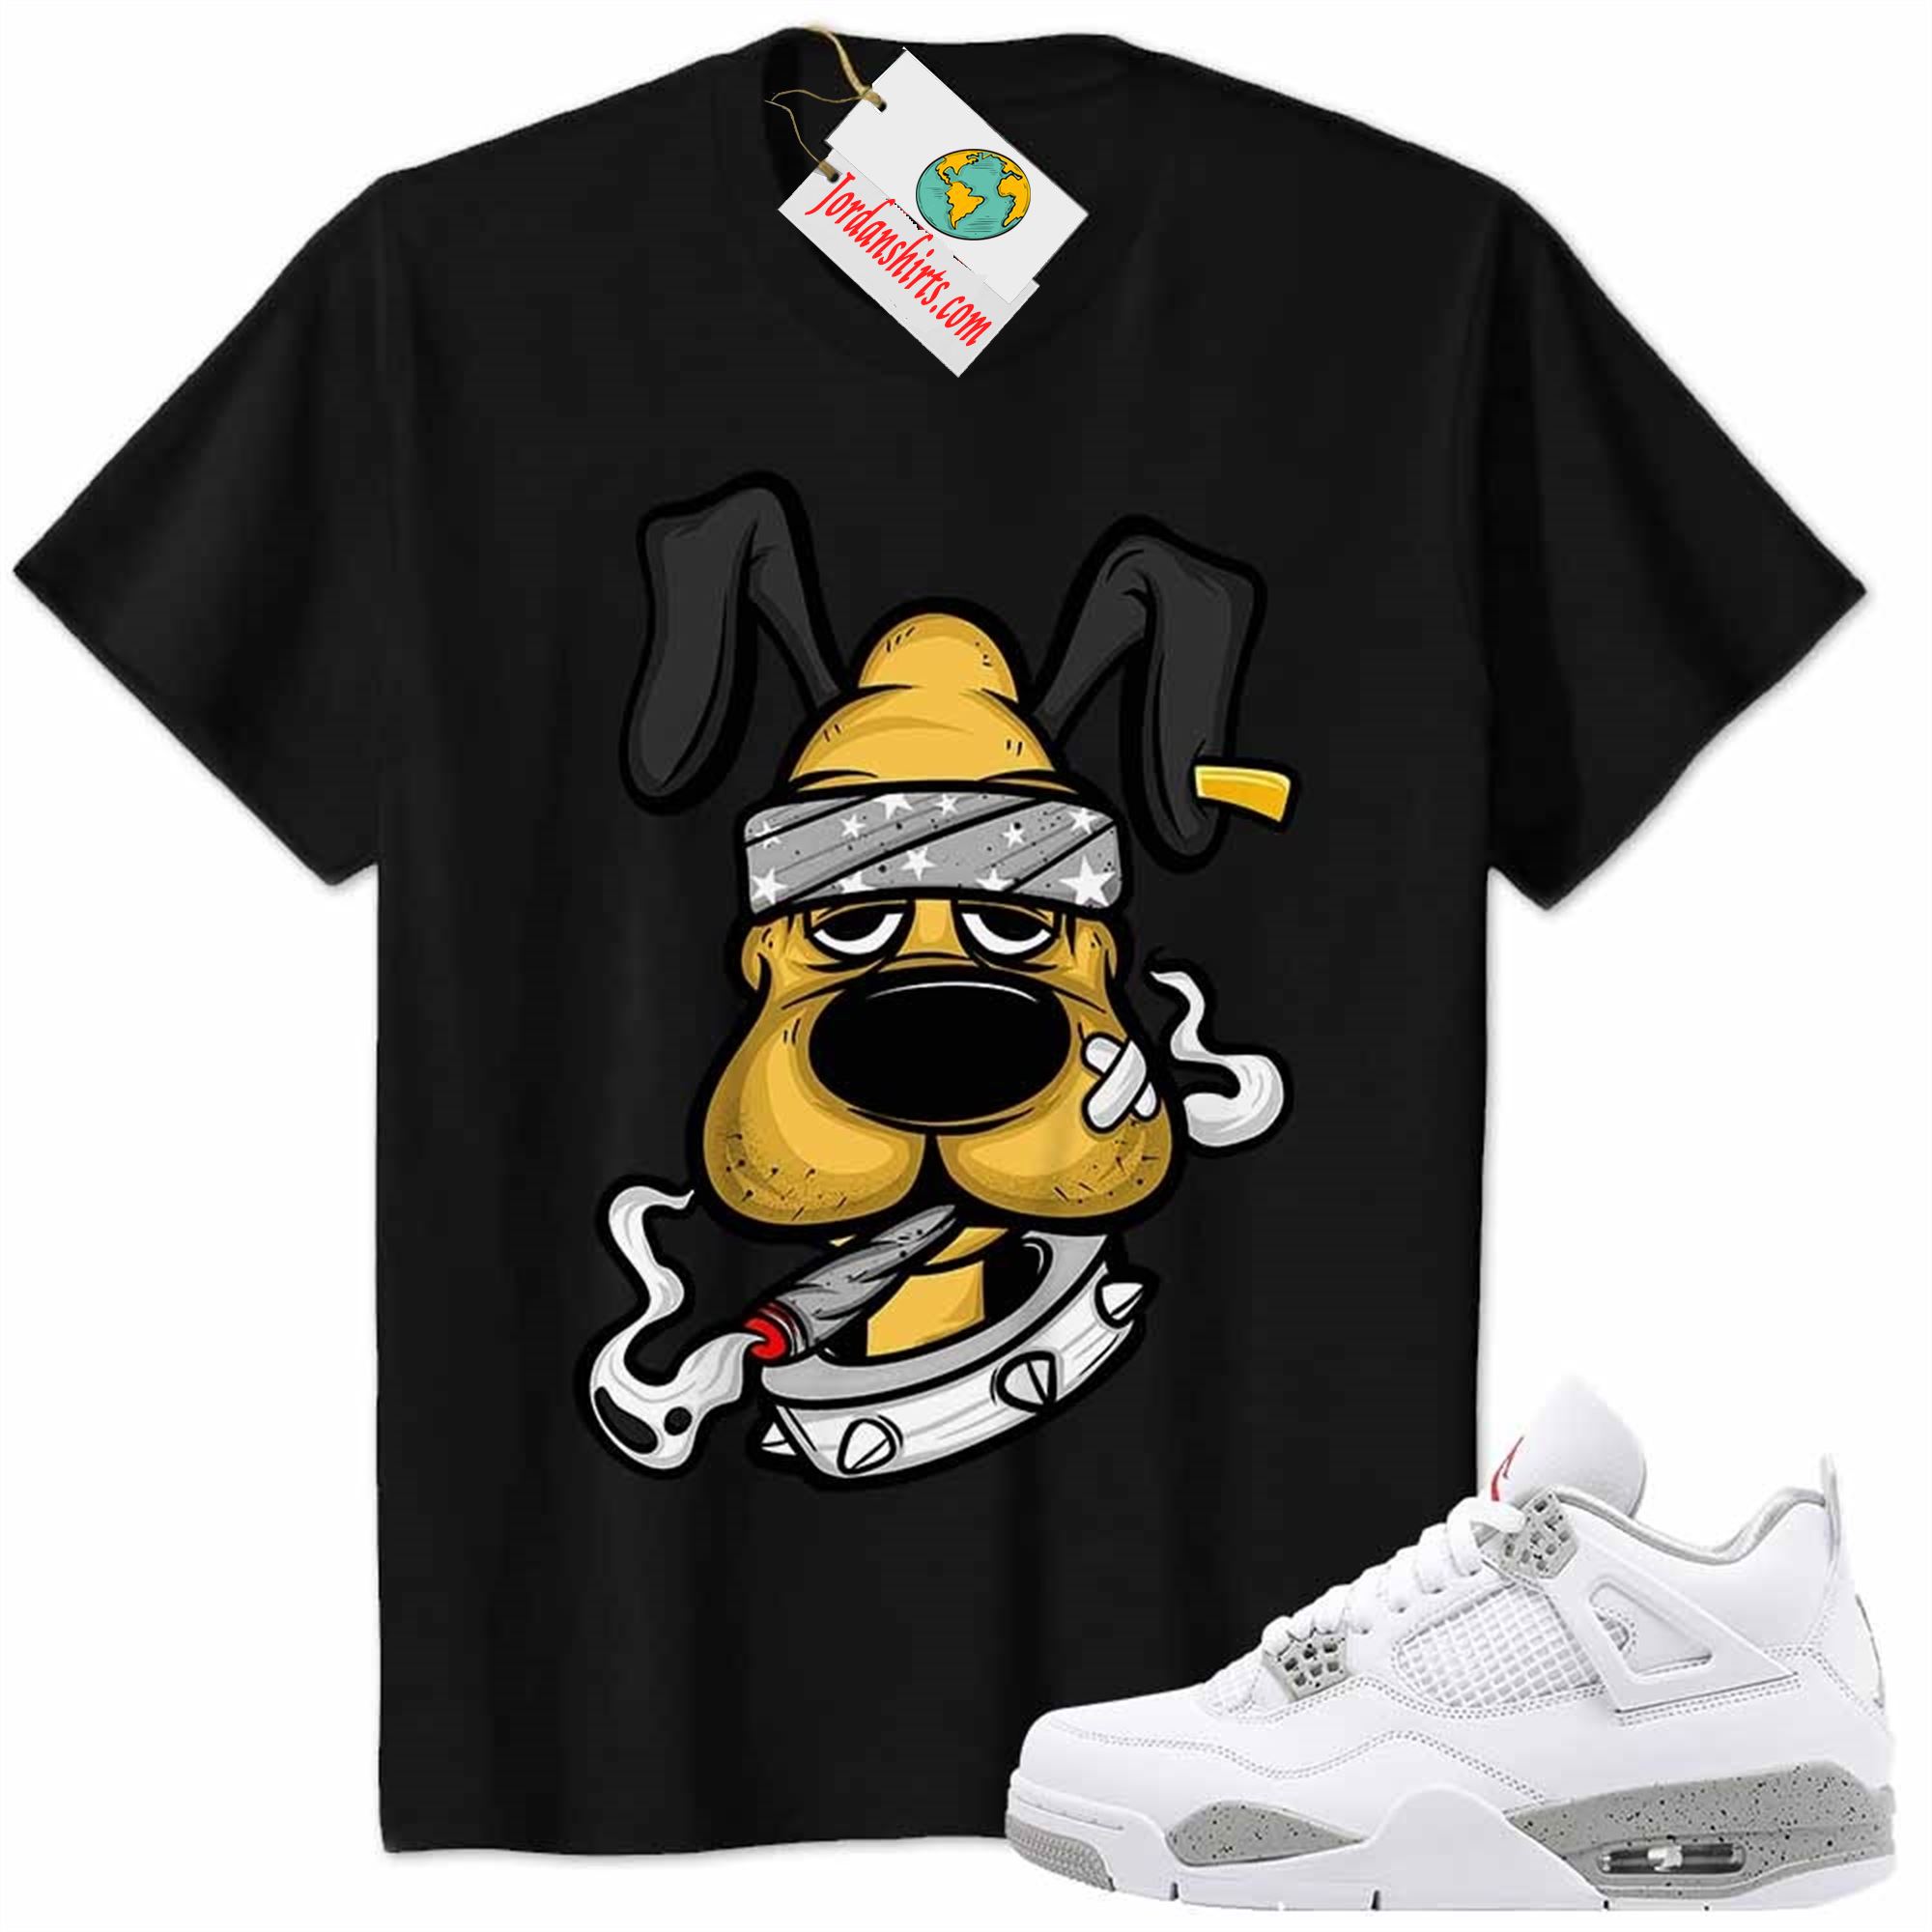 Jordan 4 Shirt, Gangster Pluto Smoke Weed Black Air Jordan 4 White Oreo 4s Size Up To 5xl